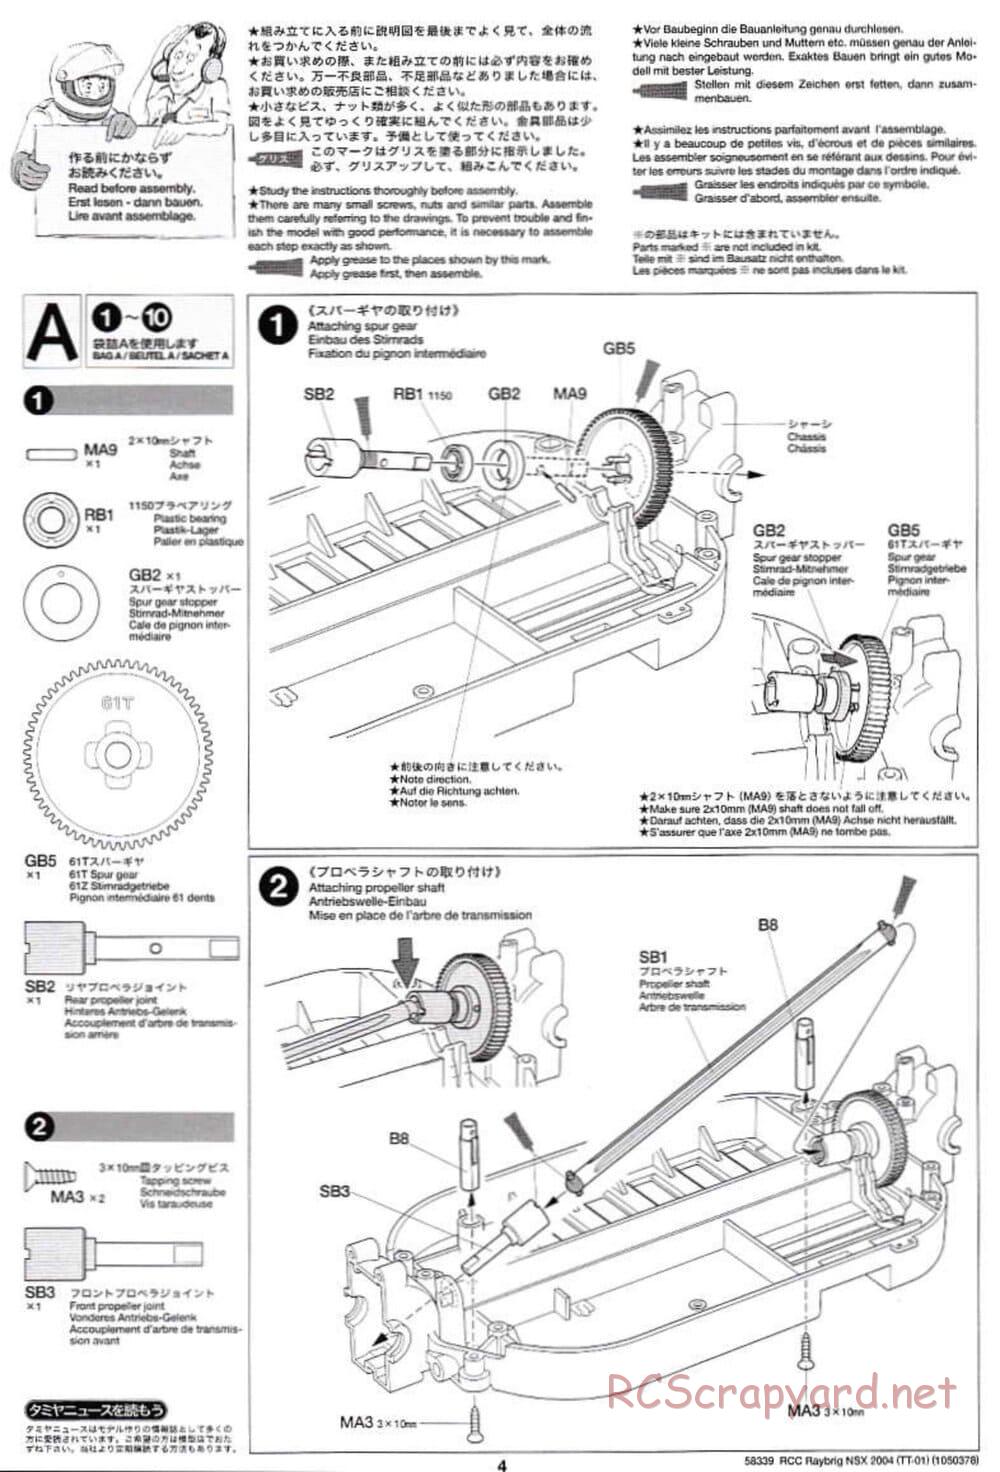 Tamiya - Raybrig NSX 2004 Chassis - Manual - Page 4